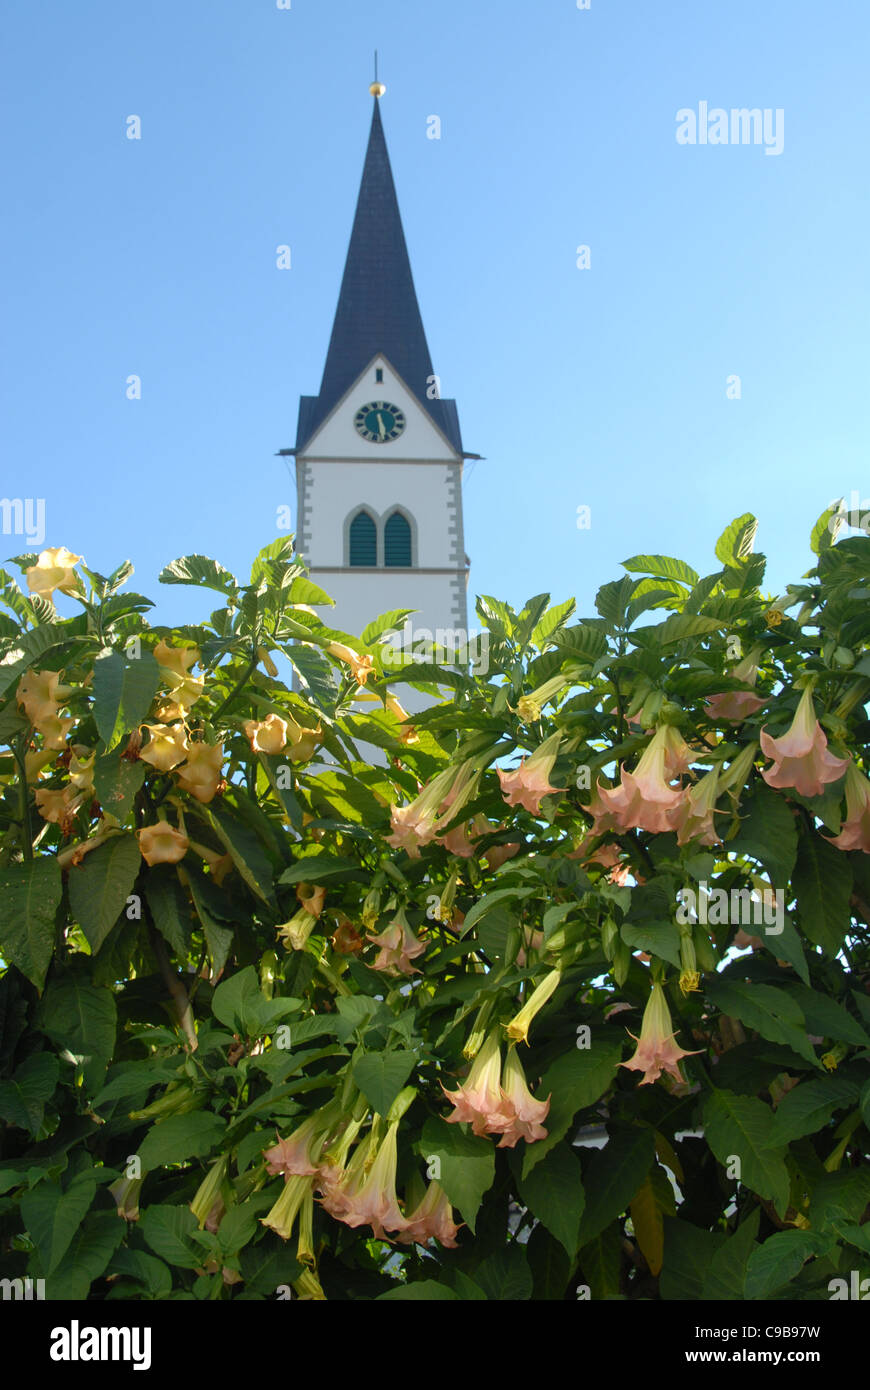 La guglia di san NIkolauskirche, la principale chiesa di Markdorf in Alta Svevia, Germania, e fiori a campana in fiore Foto Stock